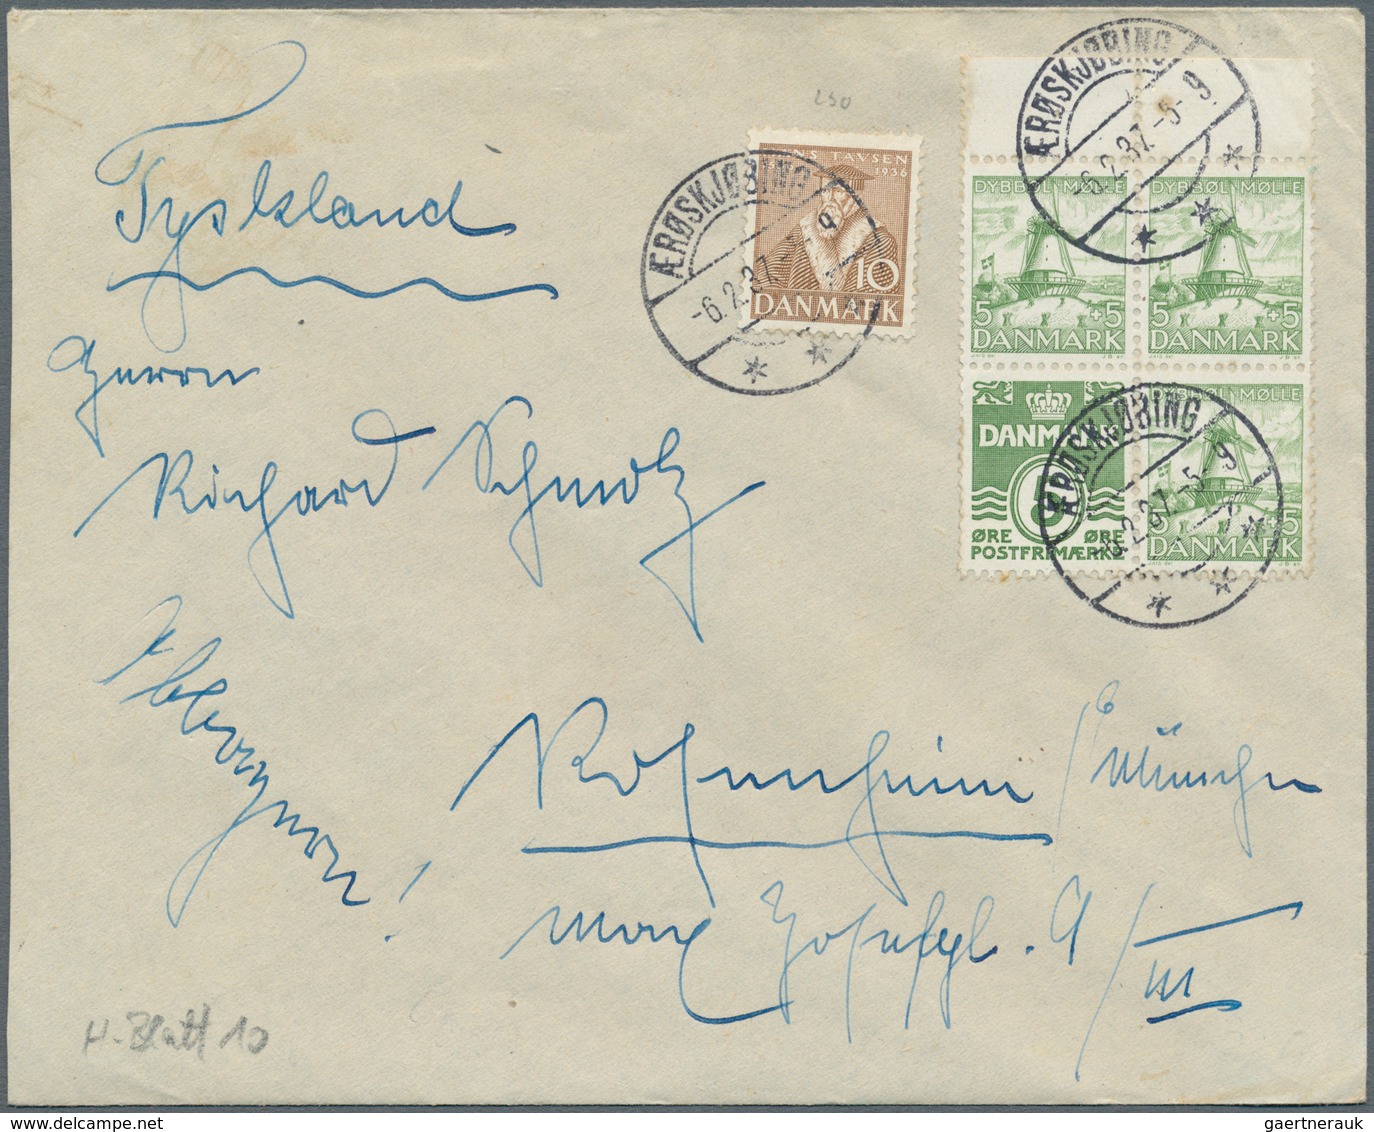 Dänemark: 1835/1969, Sammlung von insgesamt ca. 110 Belegen und einigen losen Marken, angefangen mit